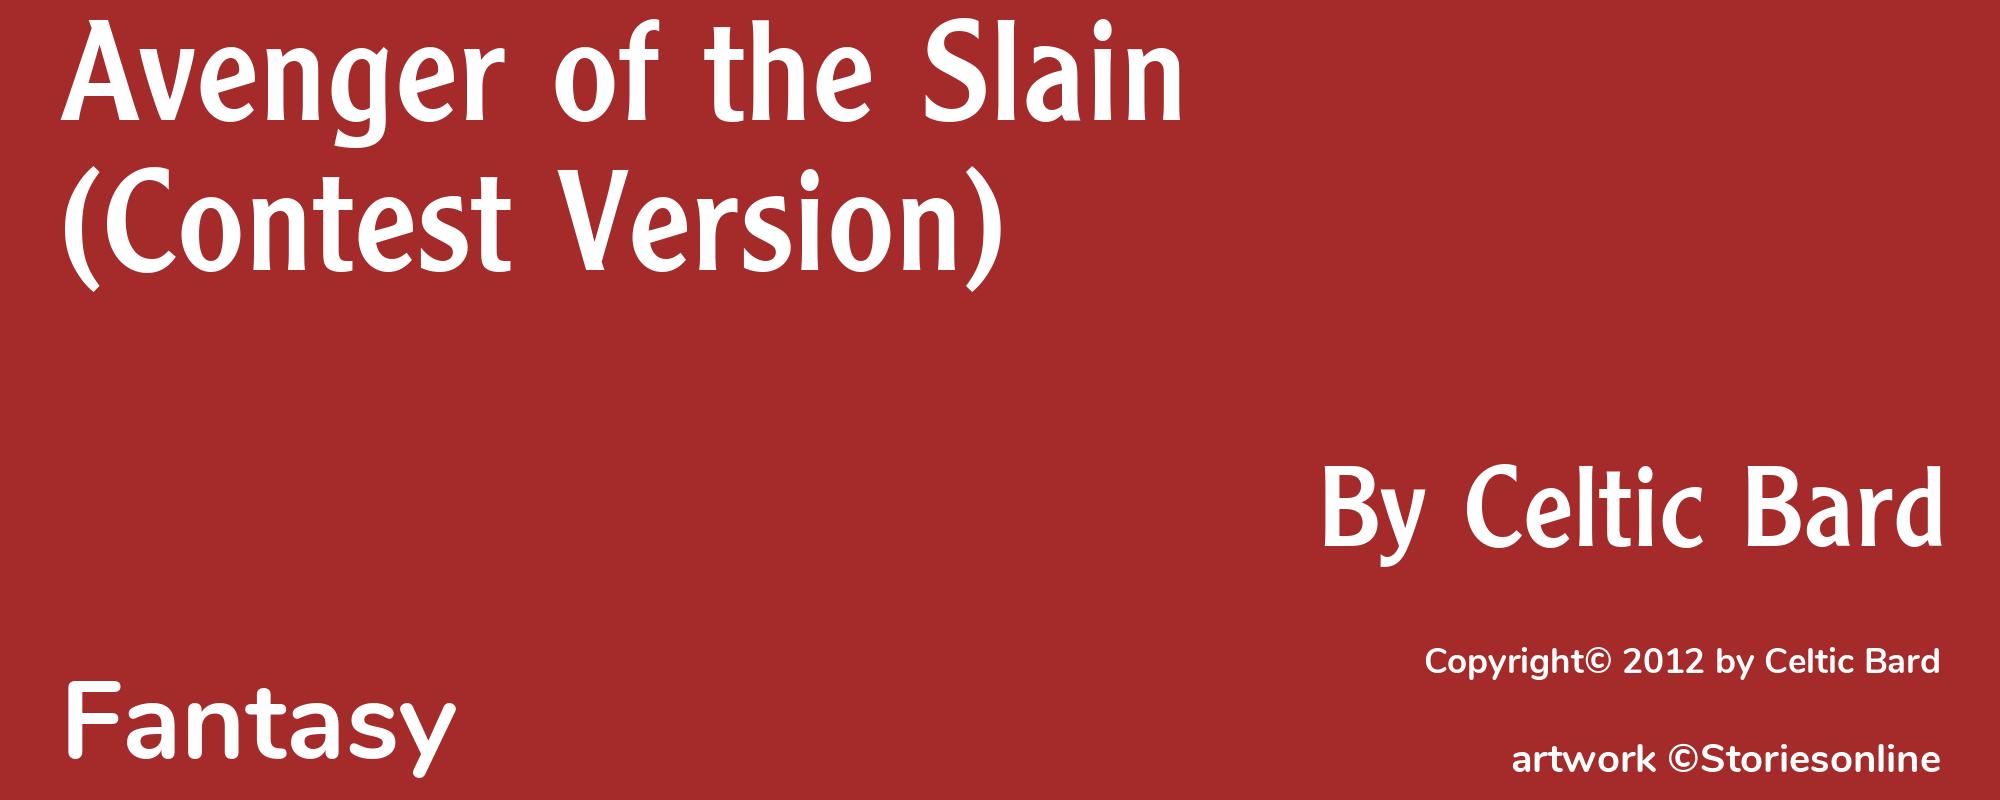 Avenger of the Slain (Contest Version) - Cover